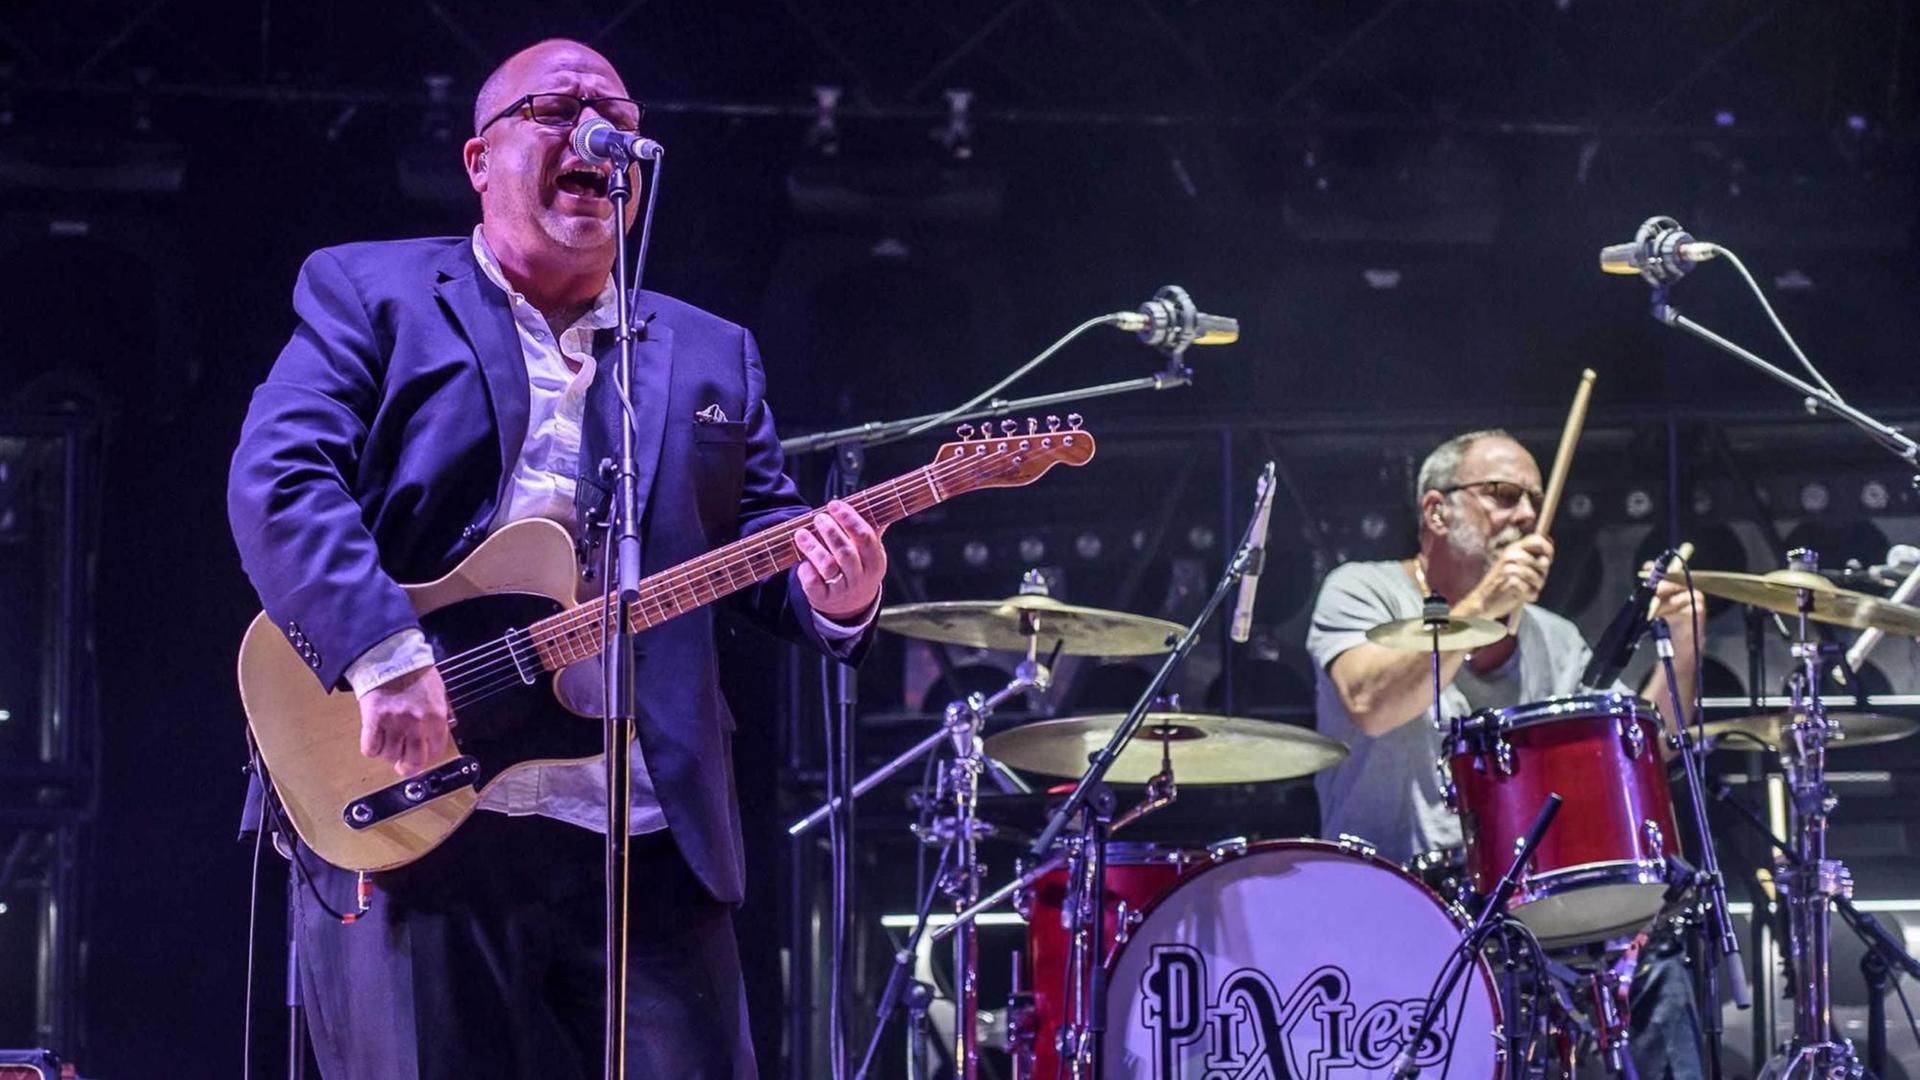 Die US-amerikanische Independent Band "Pixies" während einer Performance auf dem Bilbao BBK Live Muisc International Festival, Spanien, am 8. Juli 2016.